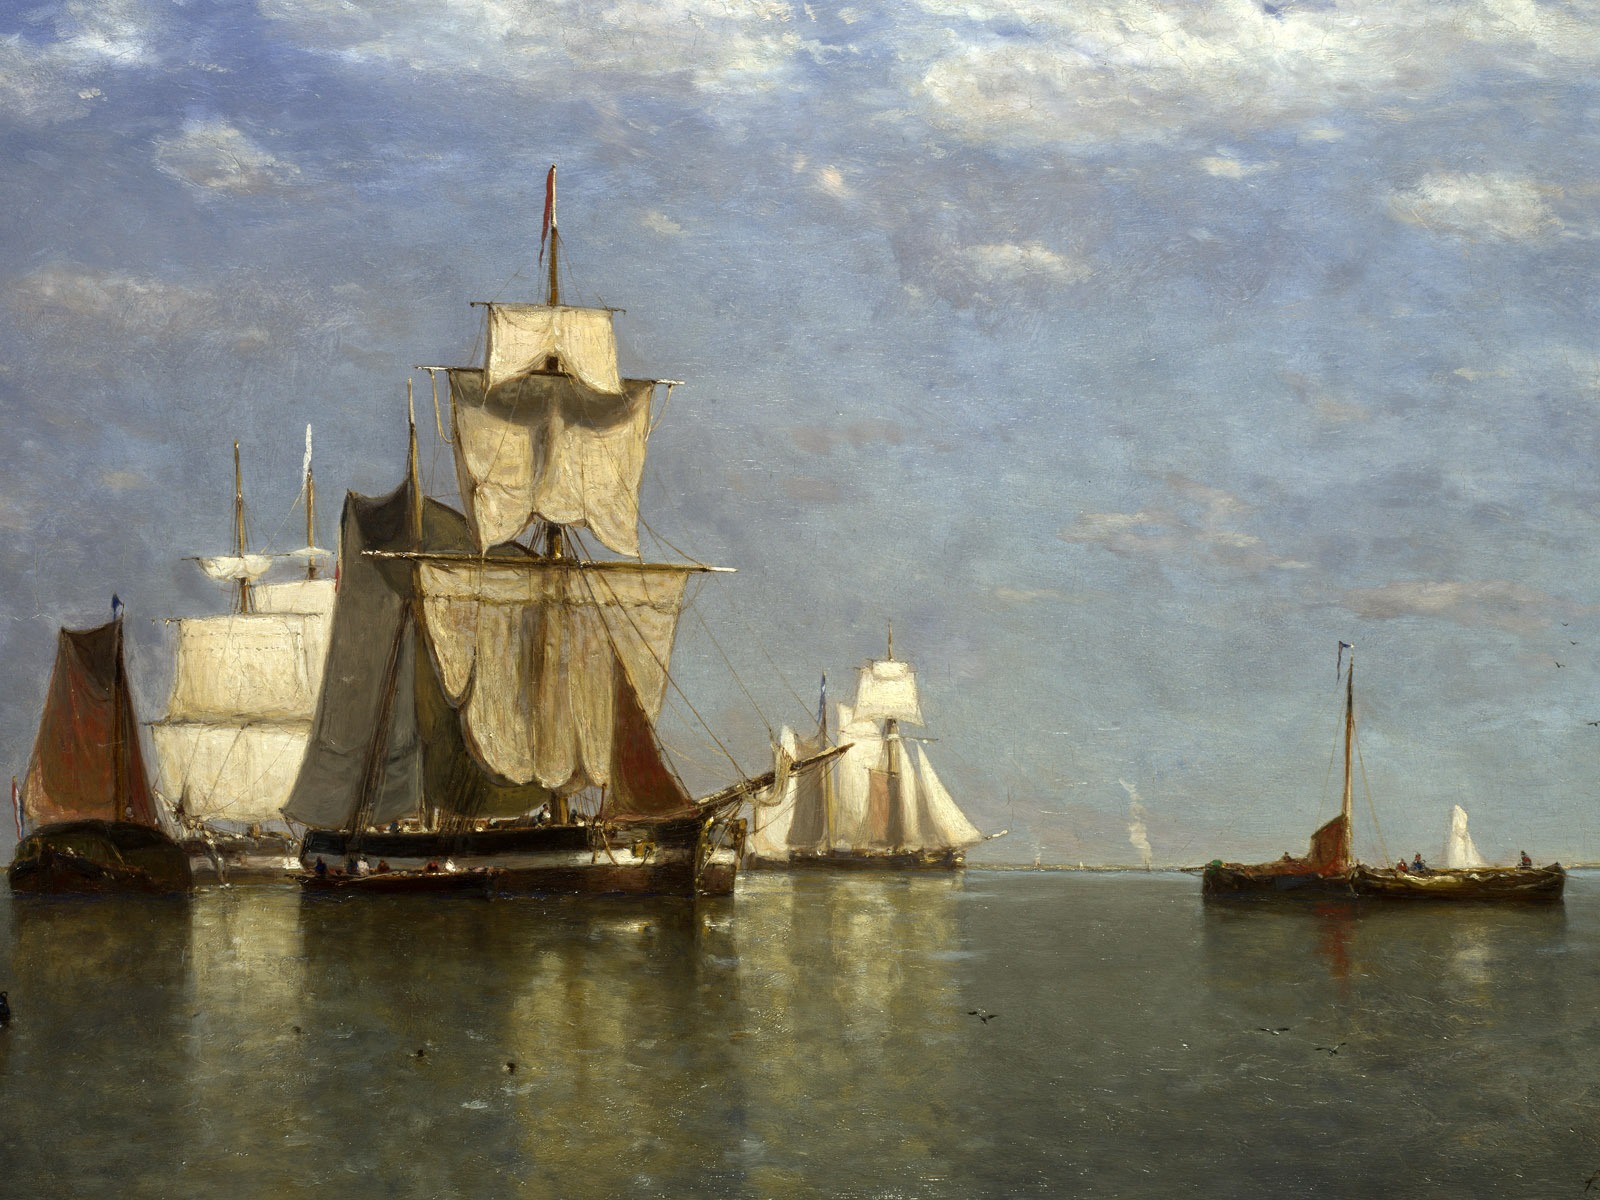 伦敦画廊帆船 壁纸(二)11 - 1600x1200